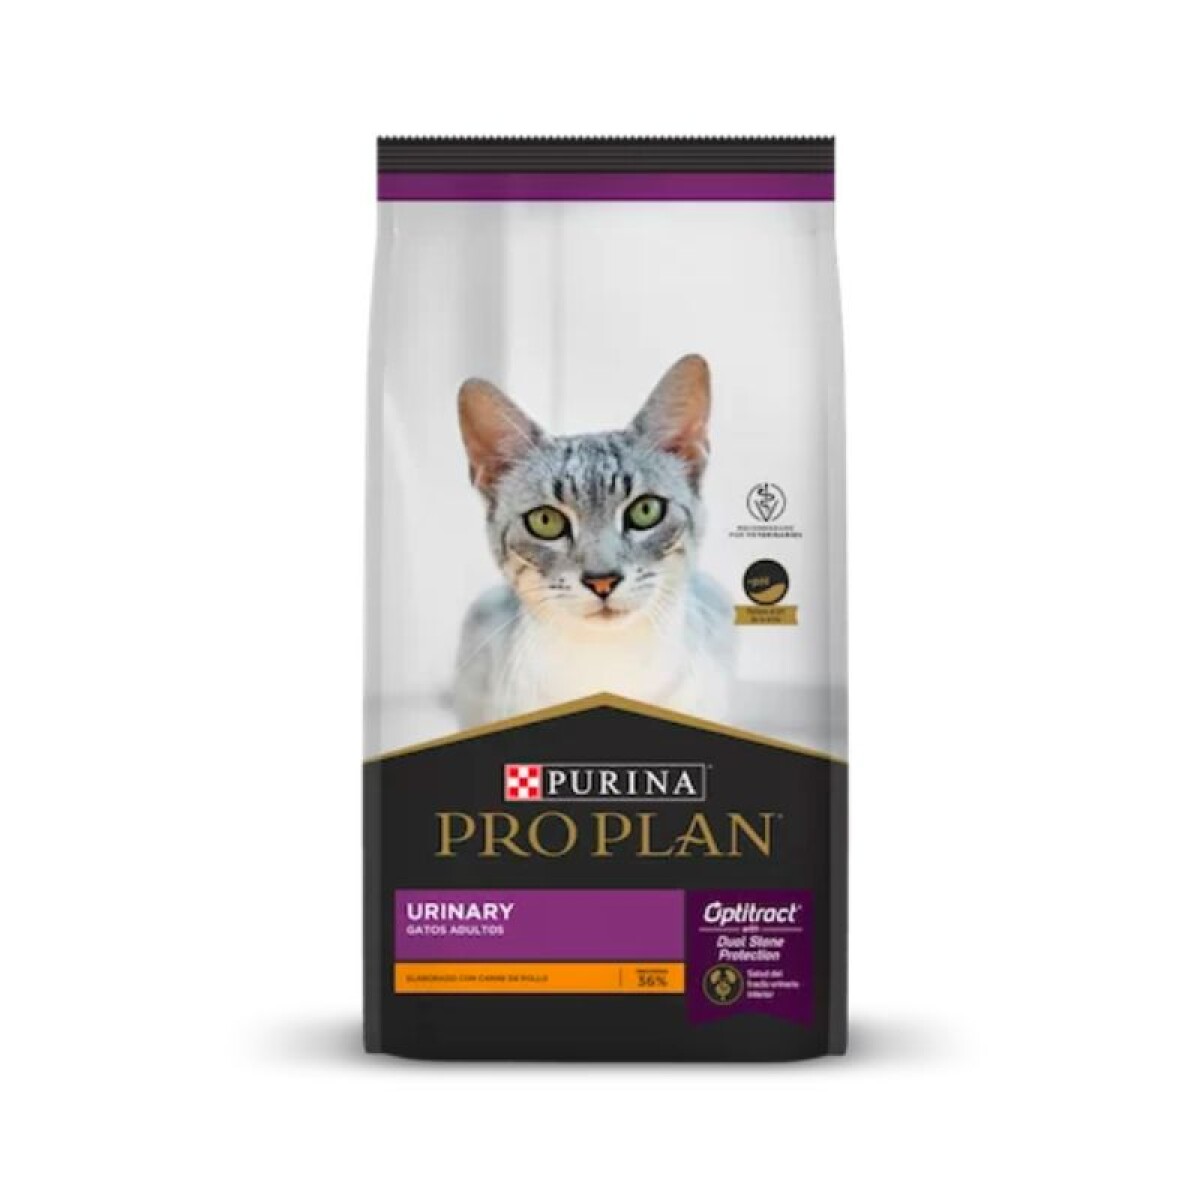 PROPLAN URINARY CAT 7,5KG - Proplan Urinary Cat 7,5kg 